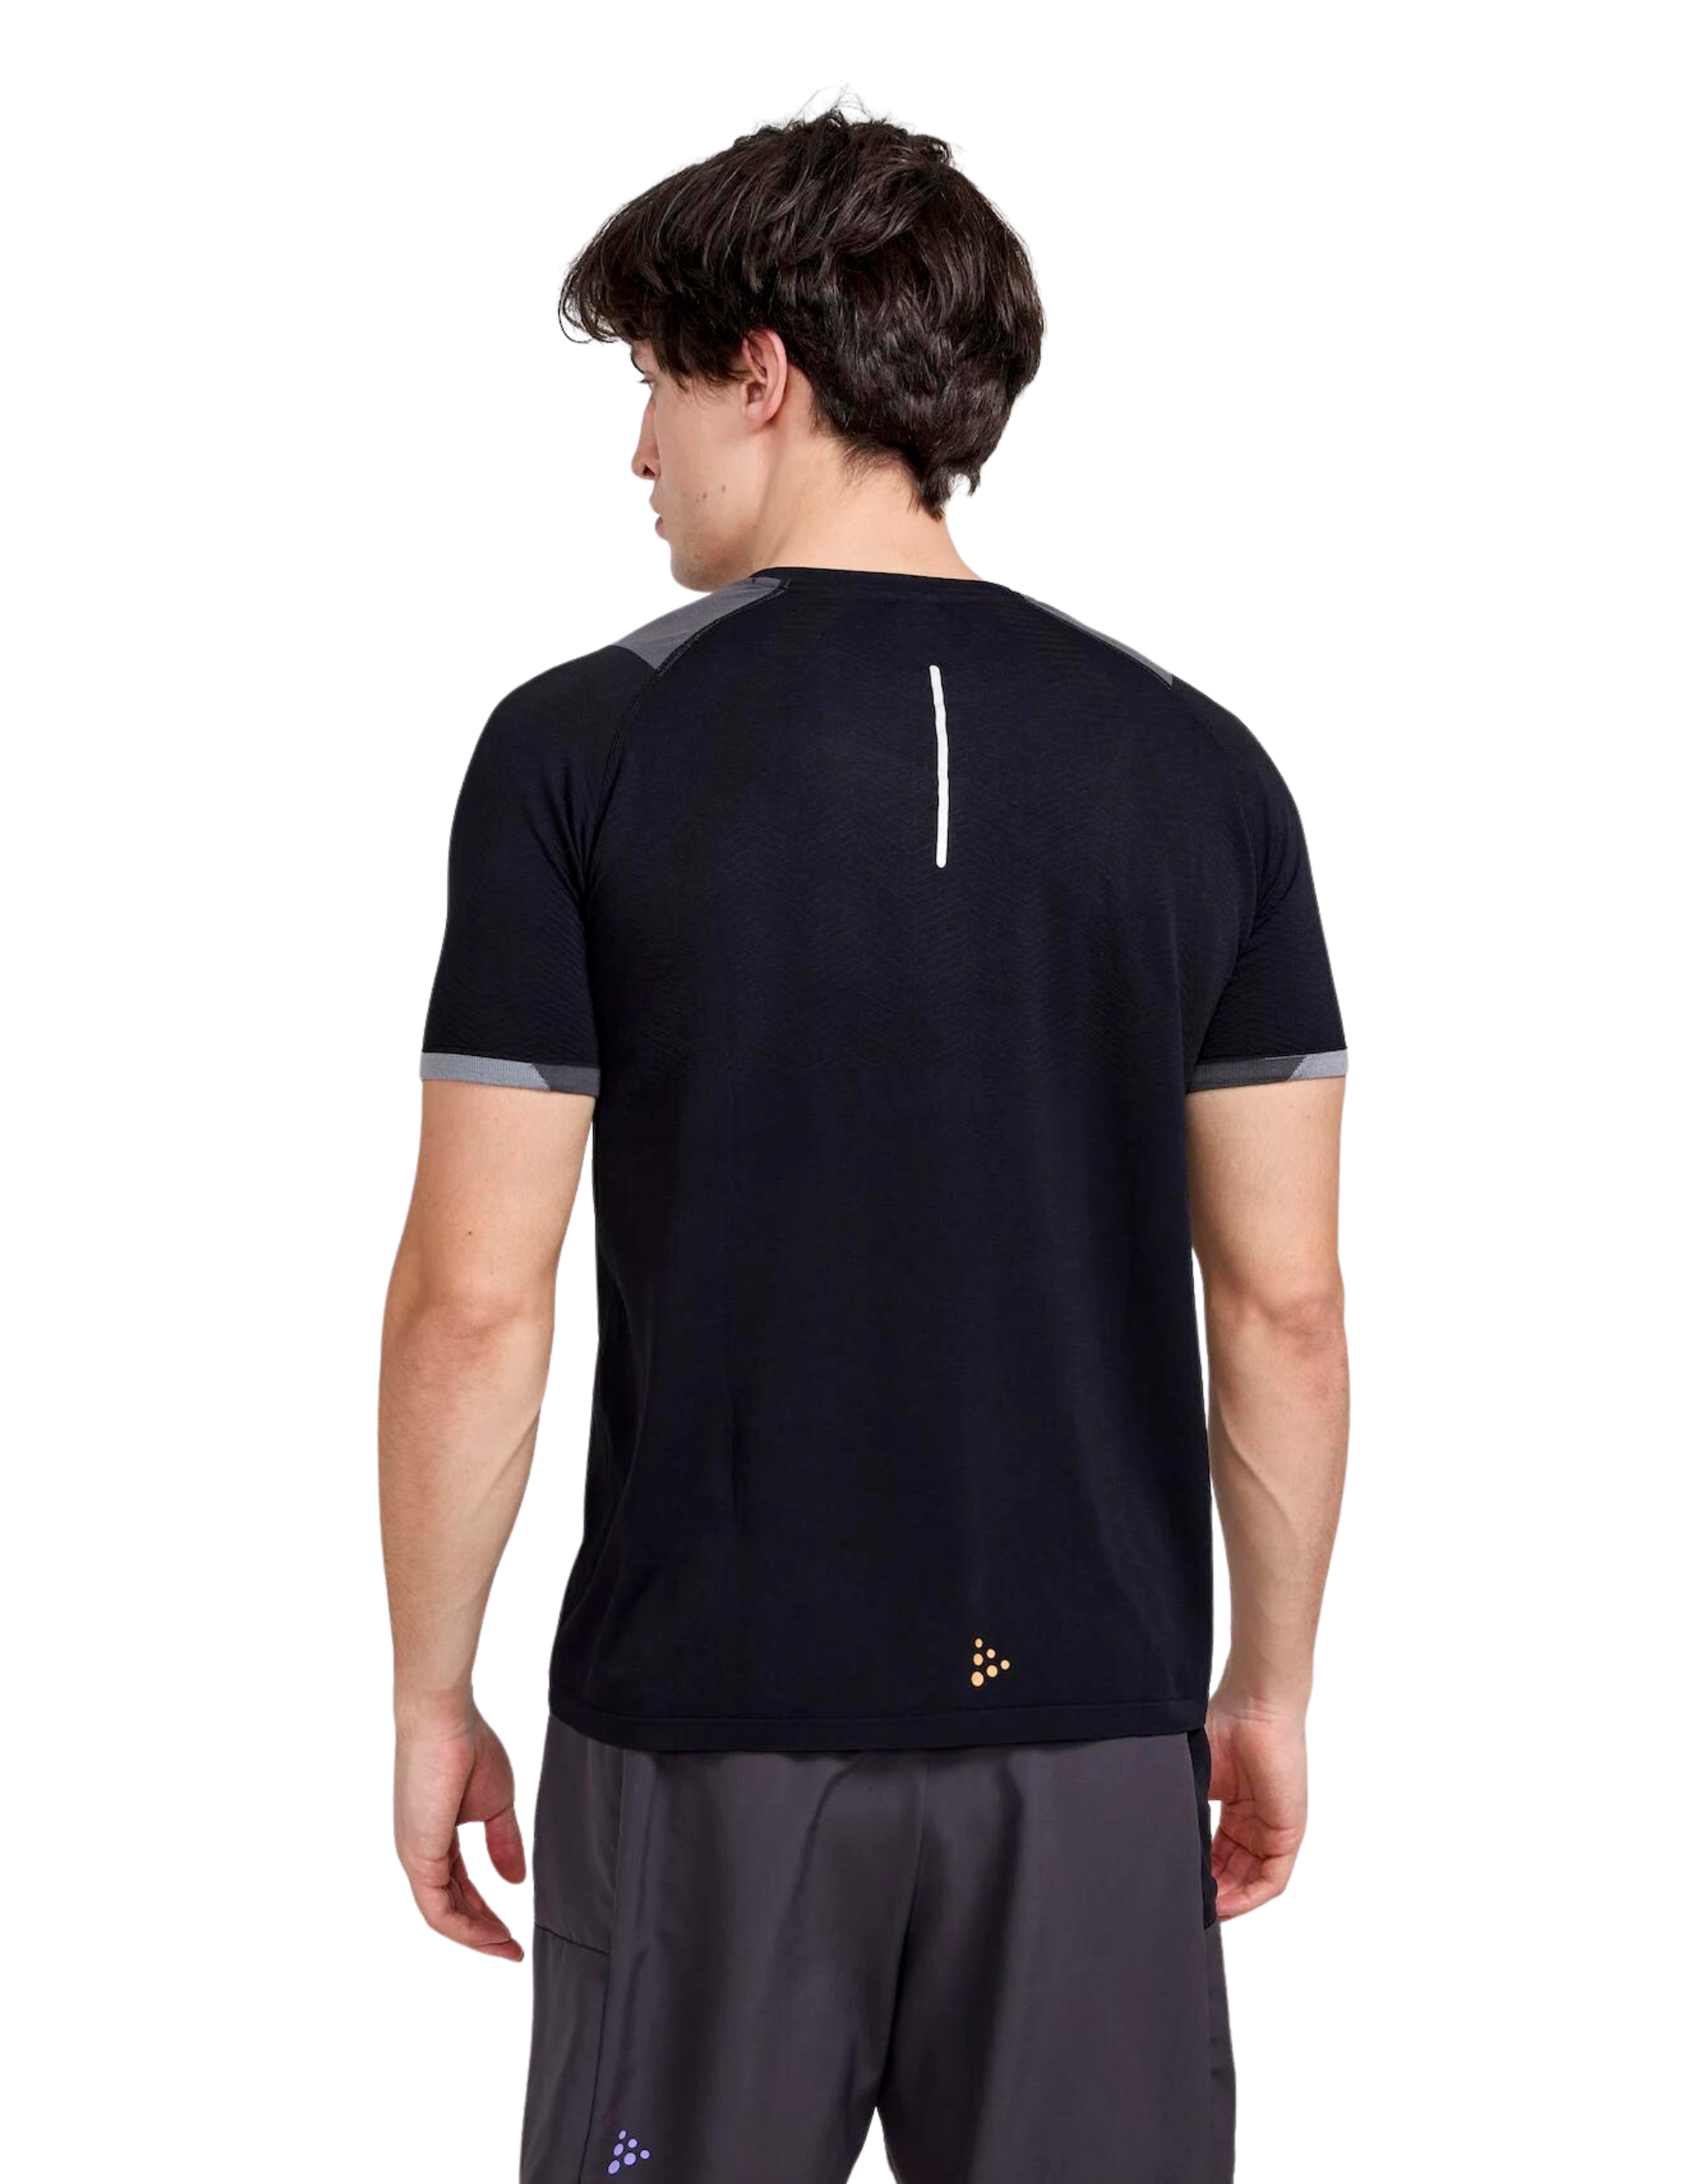 Craft Pro Trail Fuseknit Men's Short Sleeve Running T-Shirt